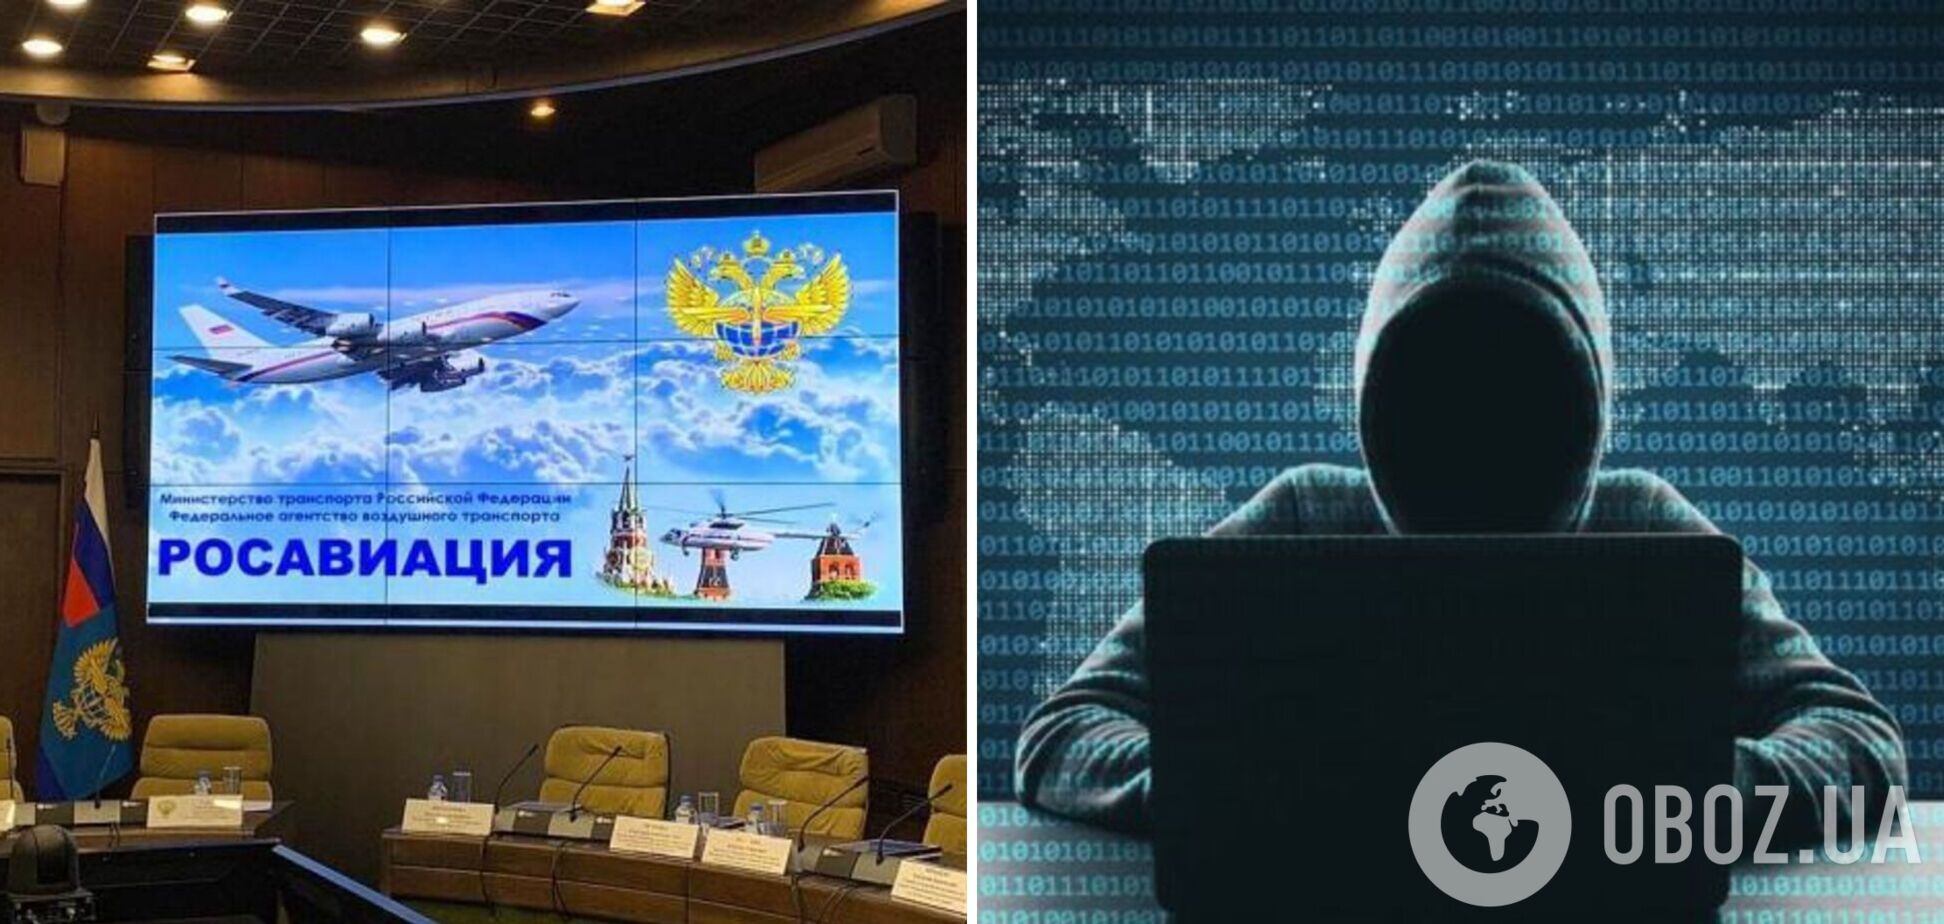 Українка зламала IT-структуру Росавіації й виїхала з РФ: було втрачено 'надважливу інформацію' – ЗМІ